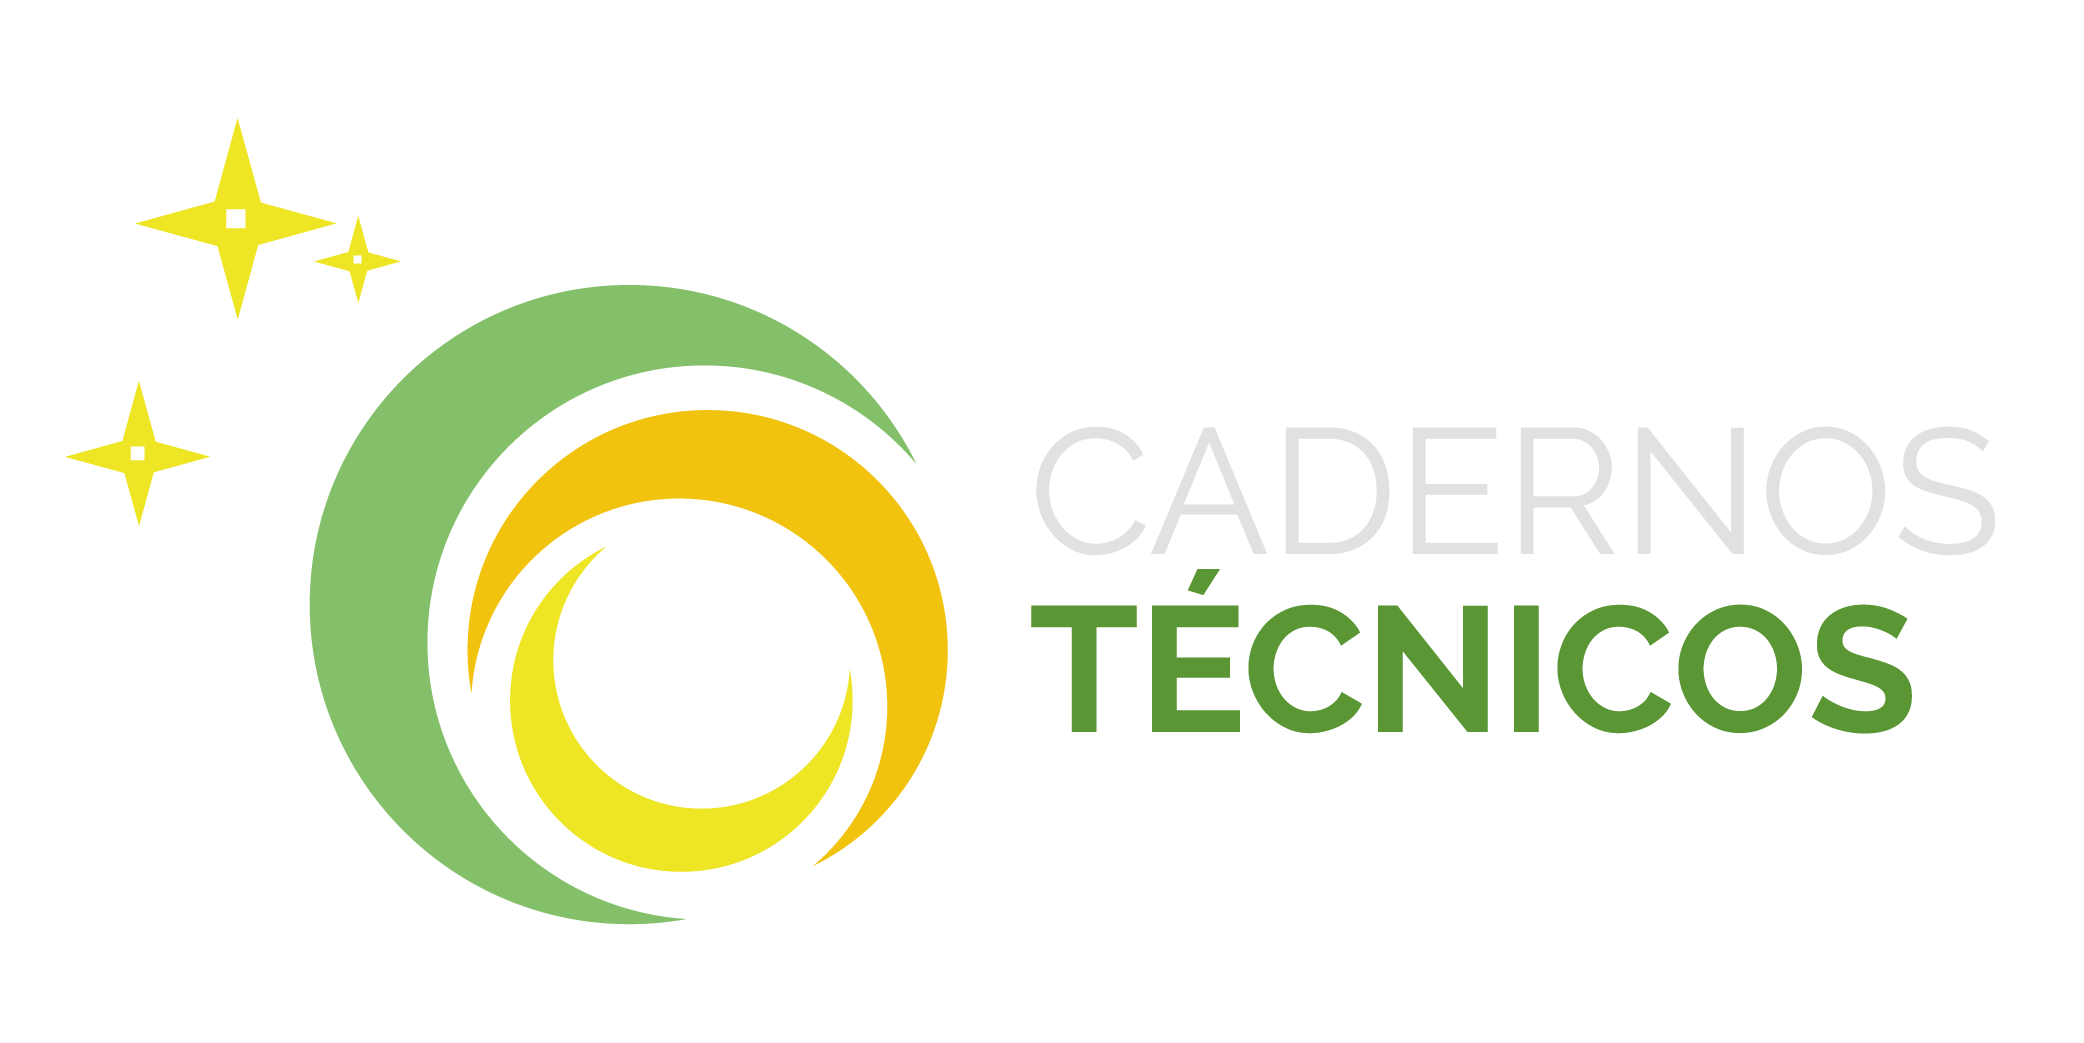 Logomarca dos Cadernos Técnicos da CGU